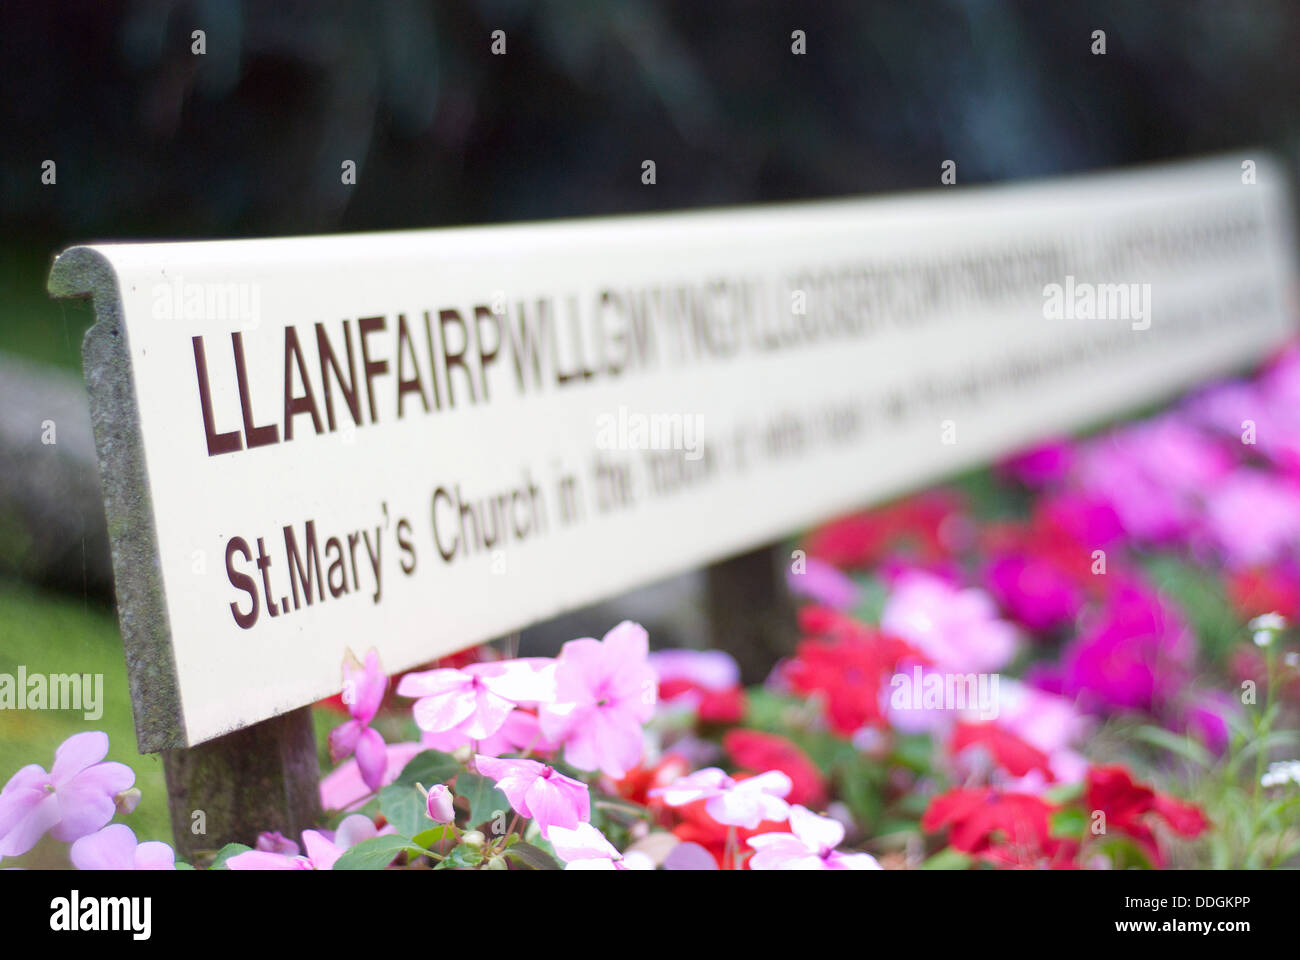 Llanfairpwllgwyngyllgogerychwyrndrobwyll-Llantysiliogogogoch längste Ort Name wales Stockfoto